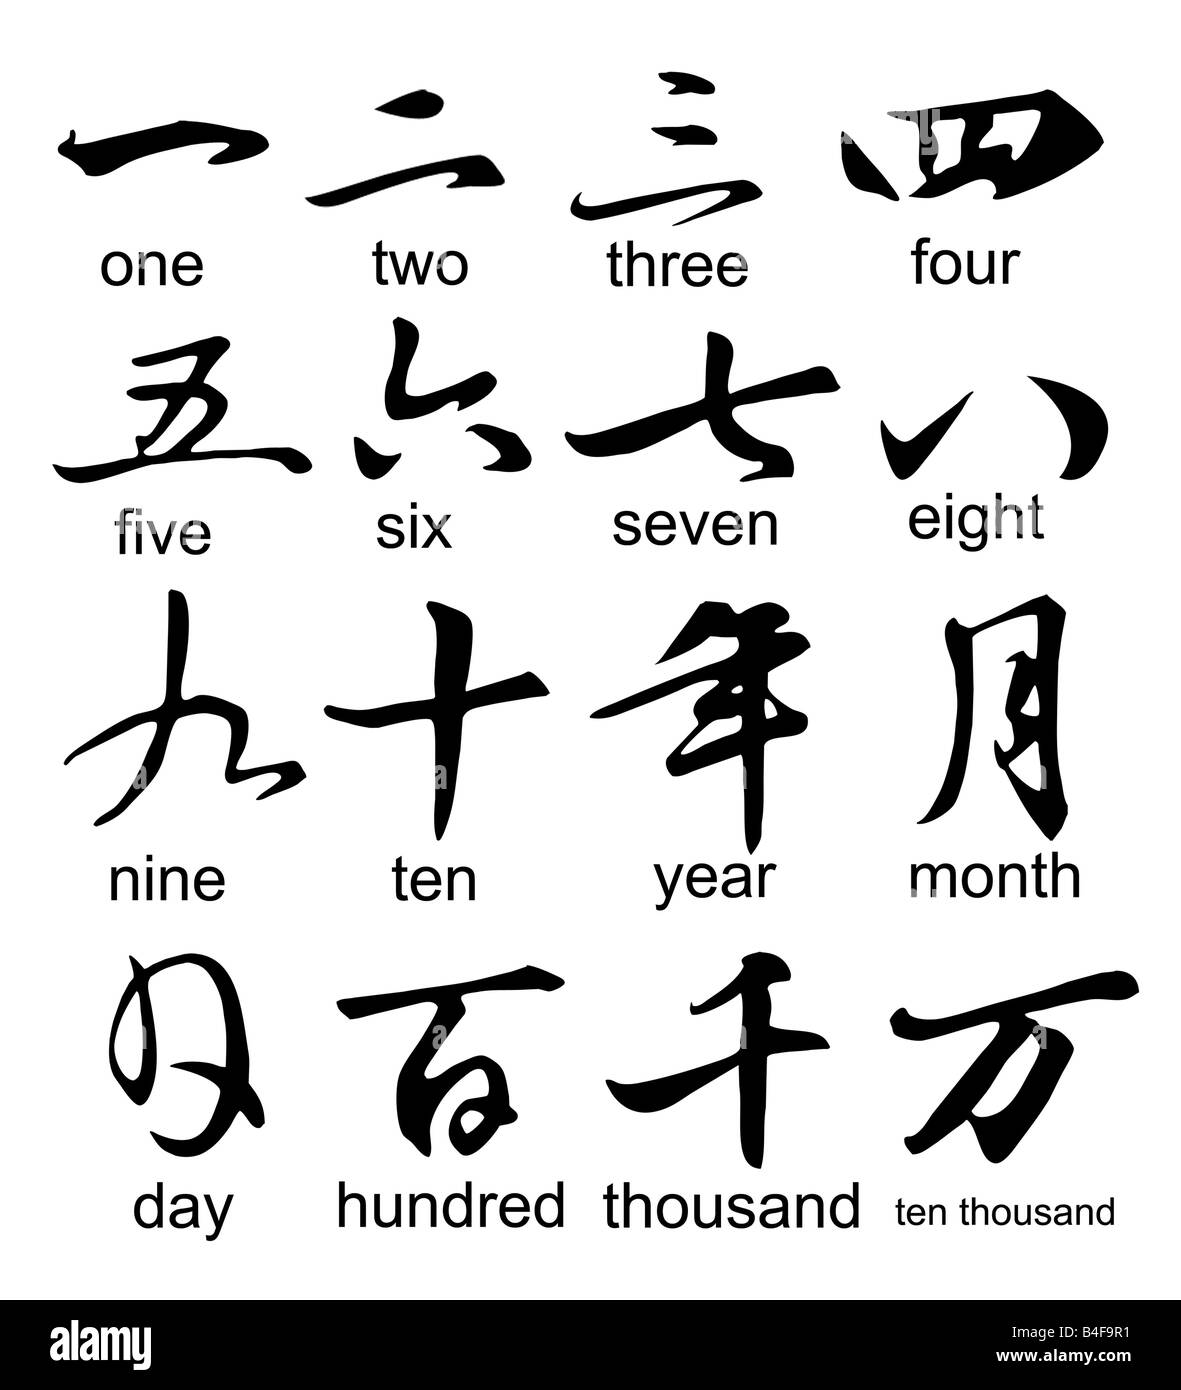 Chinesische Kalligraphie: Zahlen, Jahr, Monat und Tag Stockfoto ...